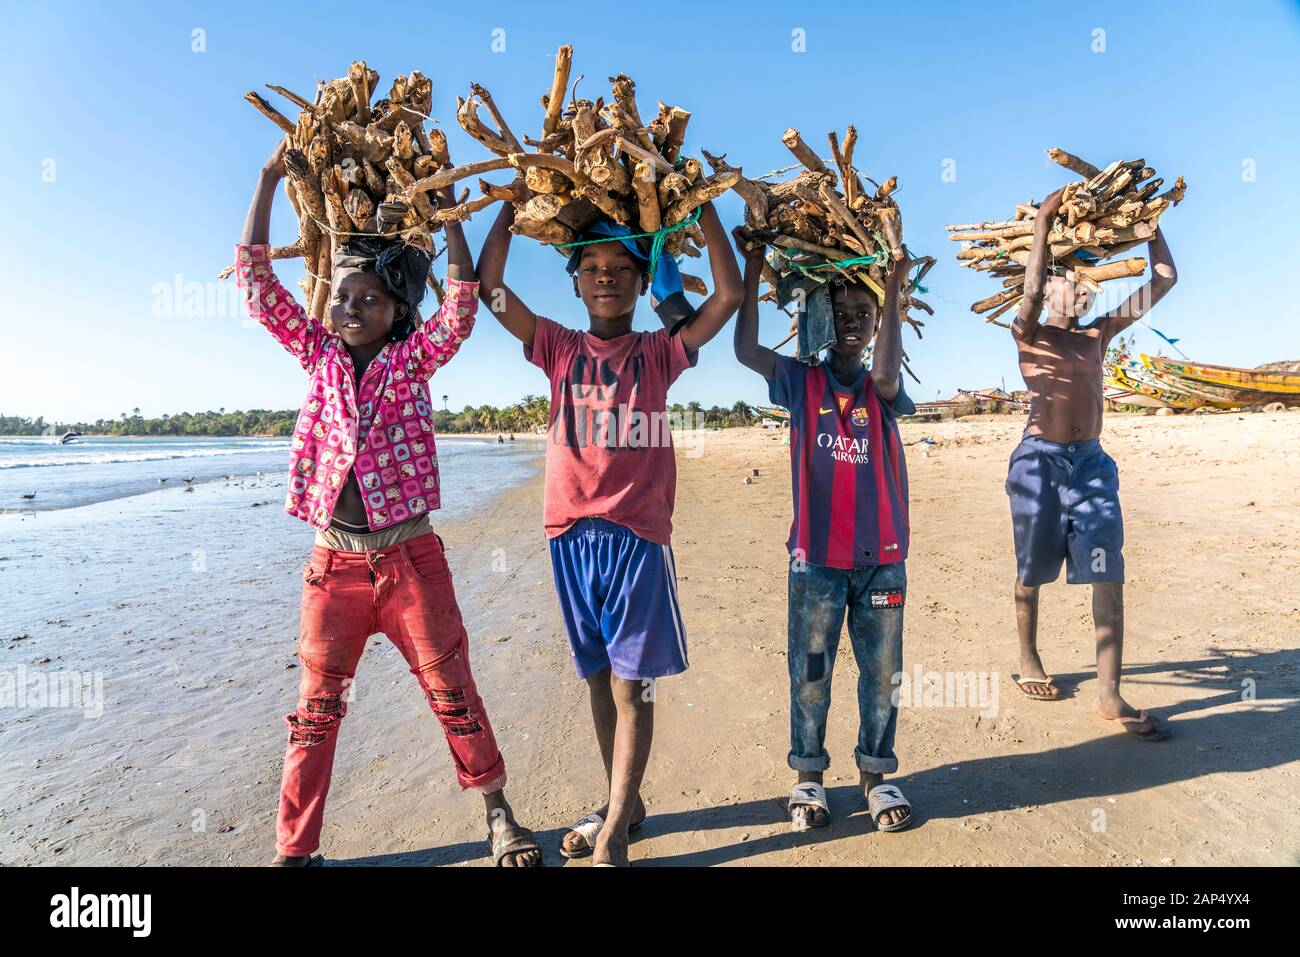 Kinder am Strand tragen Brennholz Bündel auf dem Kopf, Sanyang, Gambia, Westafrika | niños en la playa llevando los manojos de leña sobre sus él Foto de stock